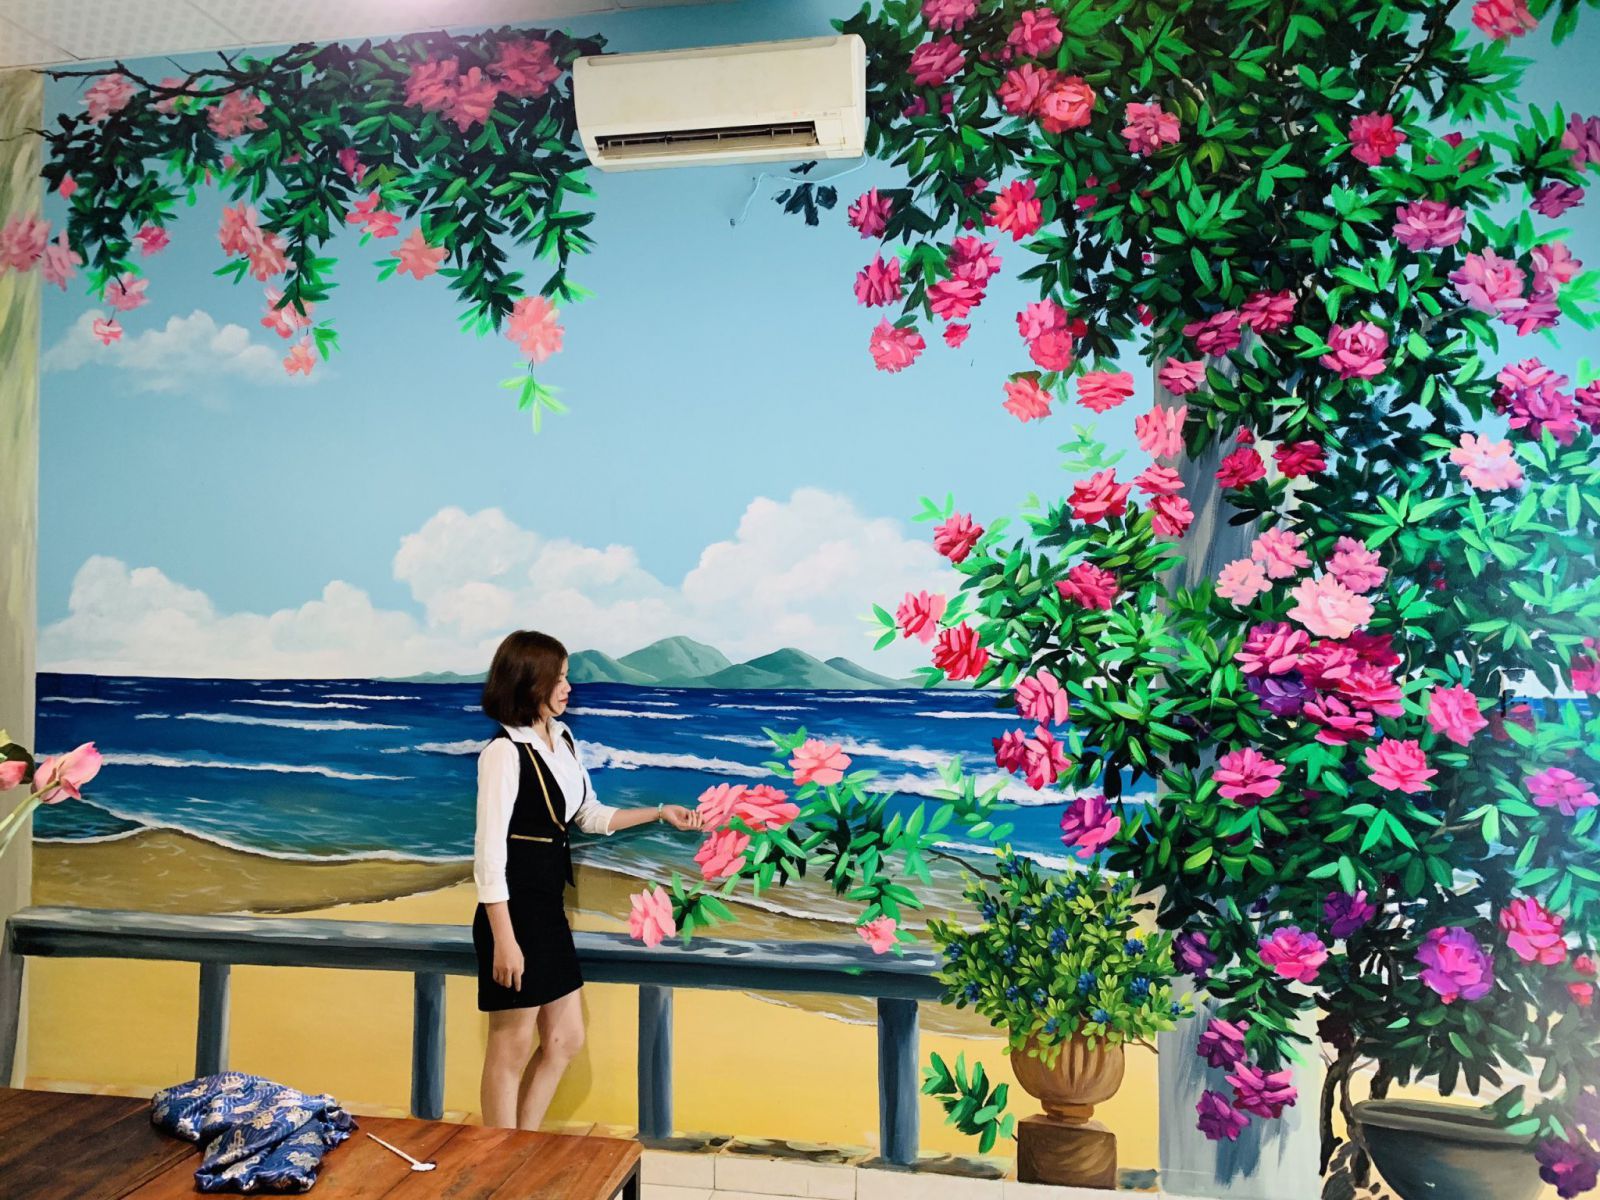 Vẽ tranh tường 3D trang trí quán nhậu, nhà hàng hải sản tạo không gian ấn  tượng cho thực khách.